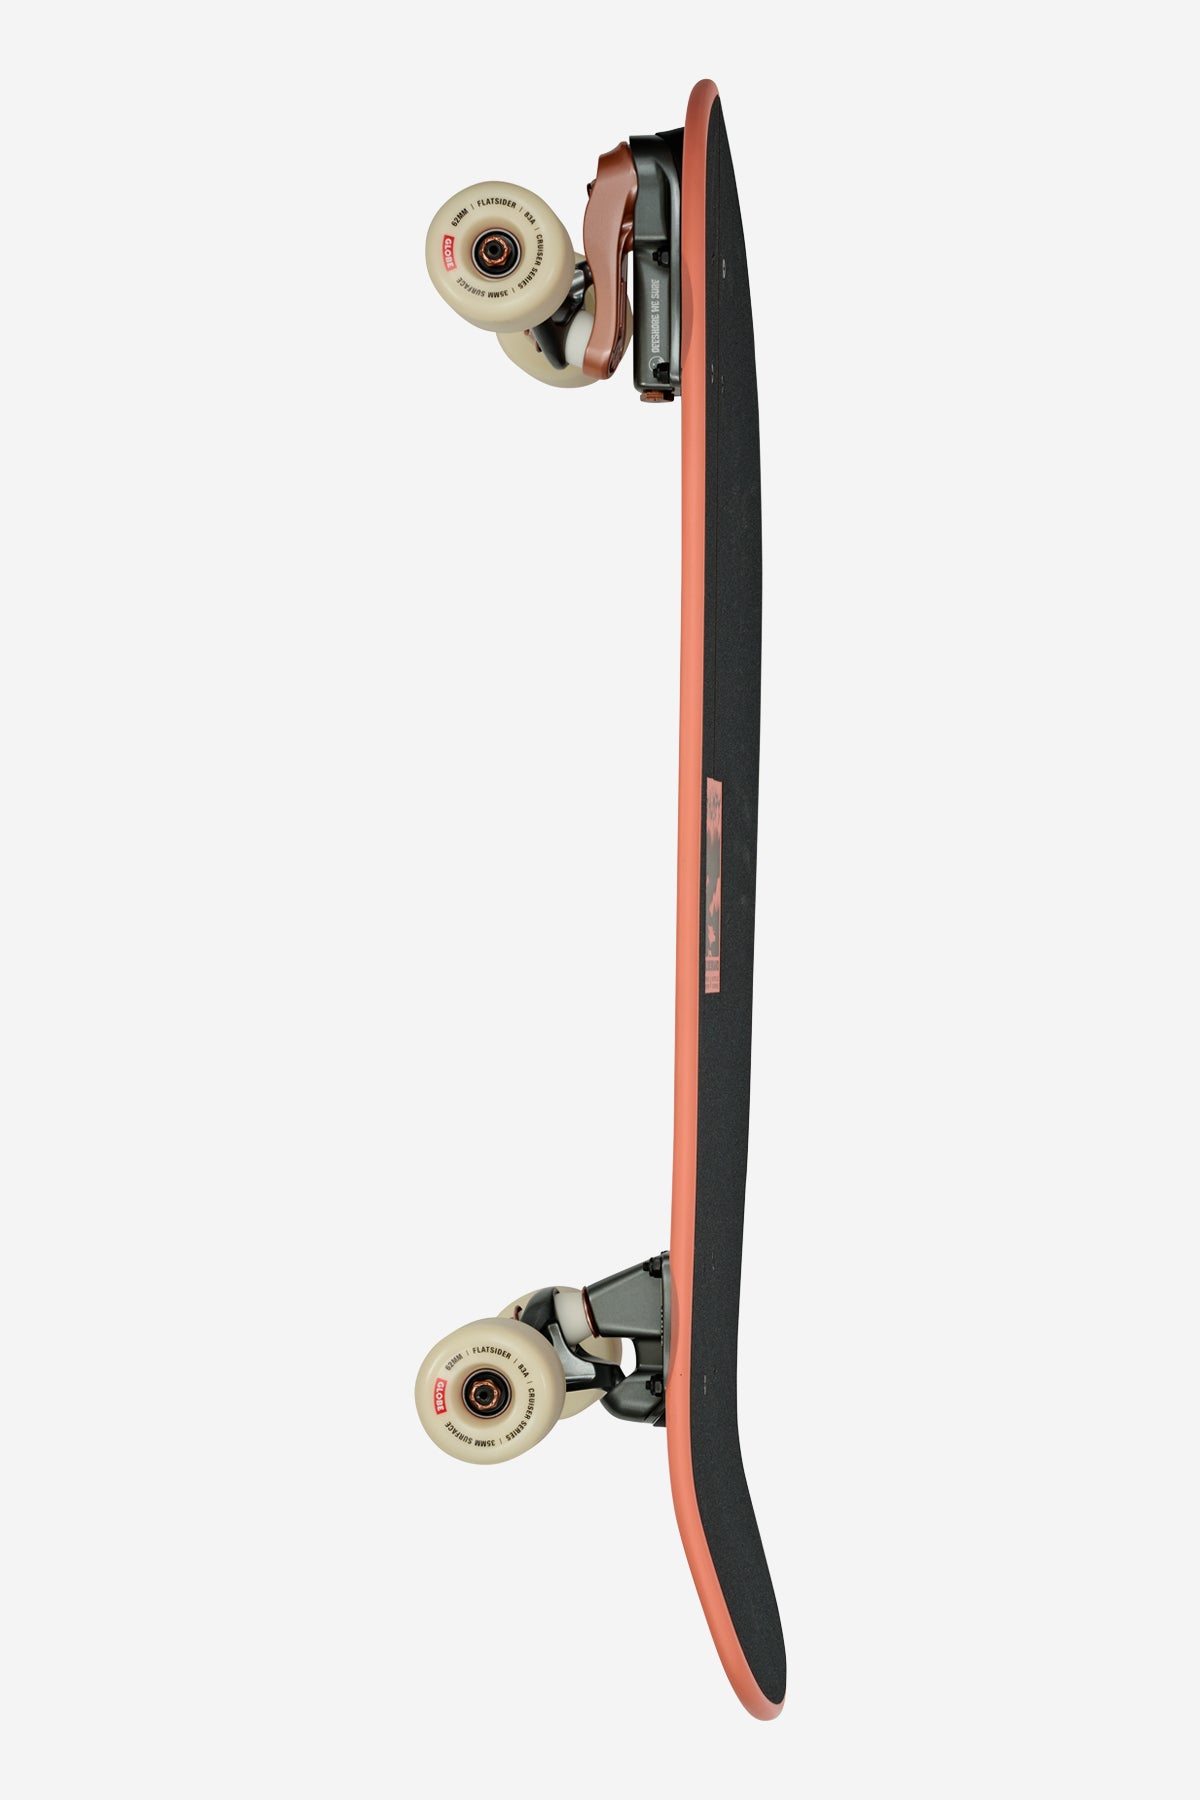 Globe - Thumpy - Stormkatten - 30" Branding skateboard